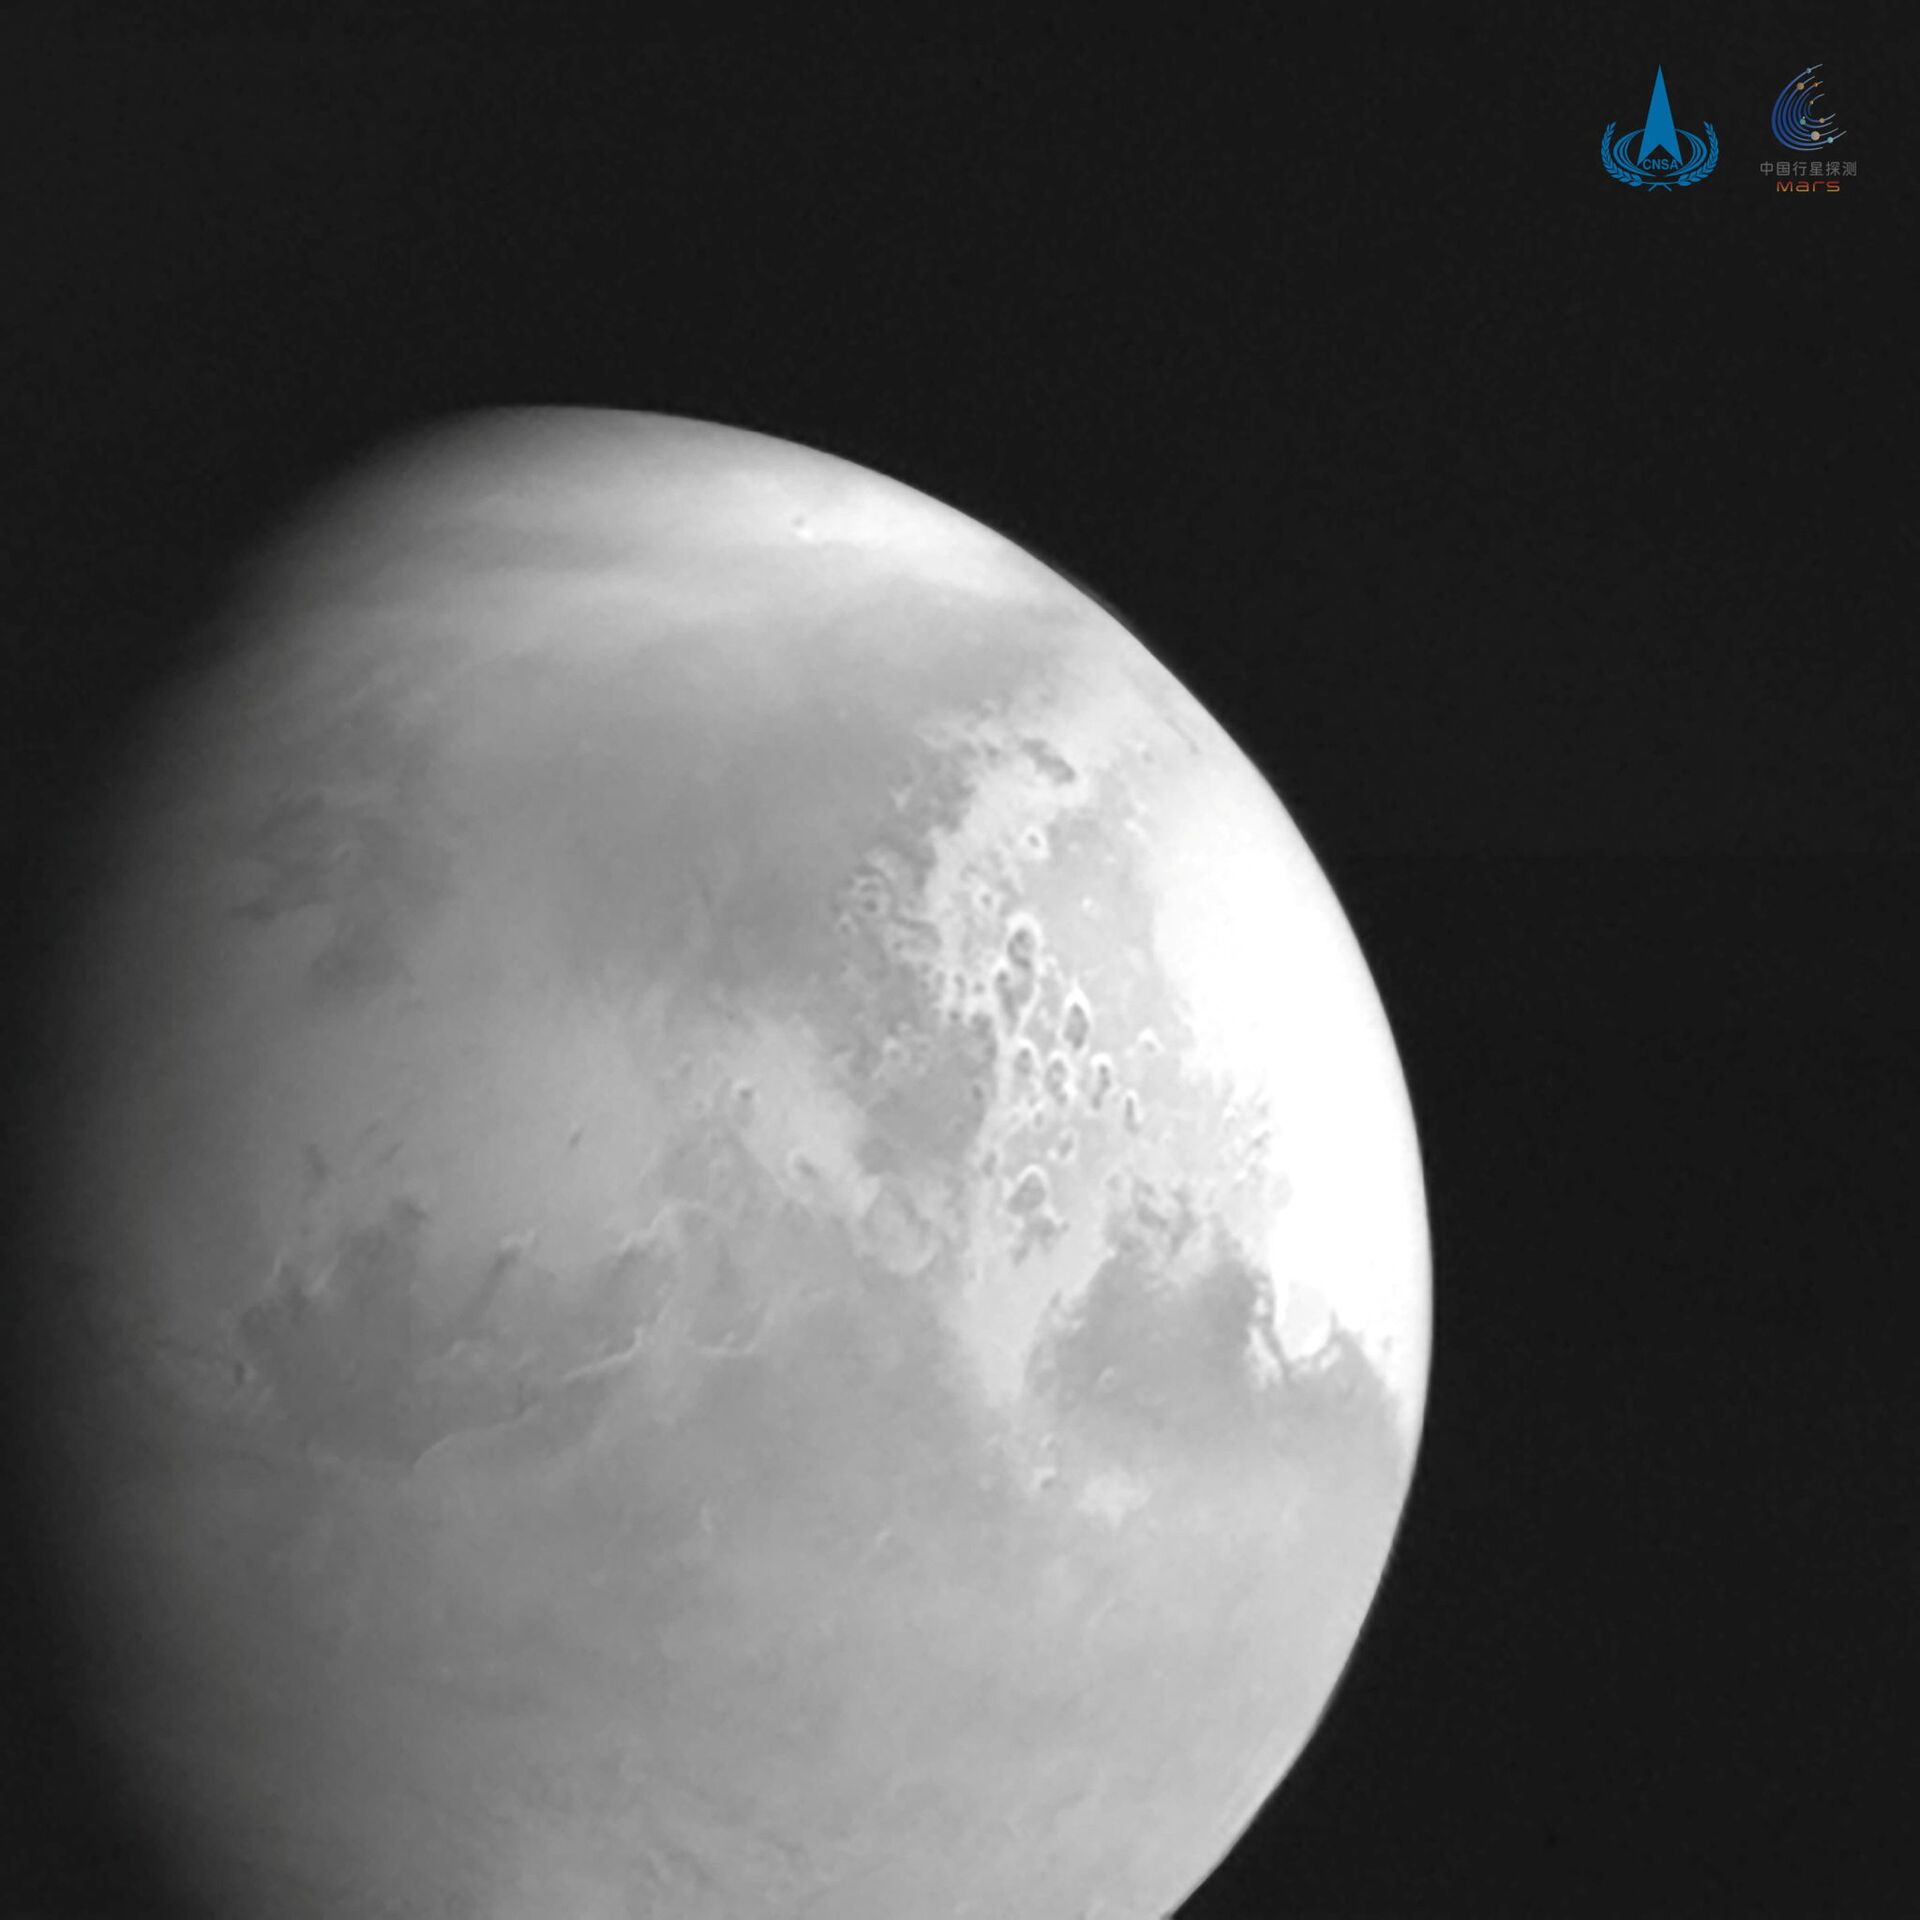 La foto de Marte captada por la sonda china Tianwen-1 - Sputnik Mundo, 1920, 11.02.2021